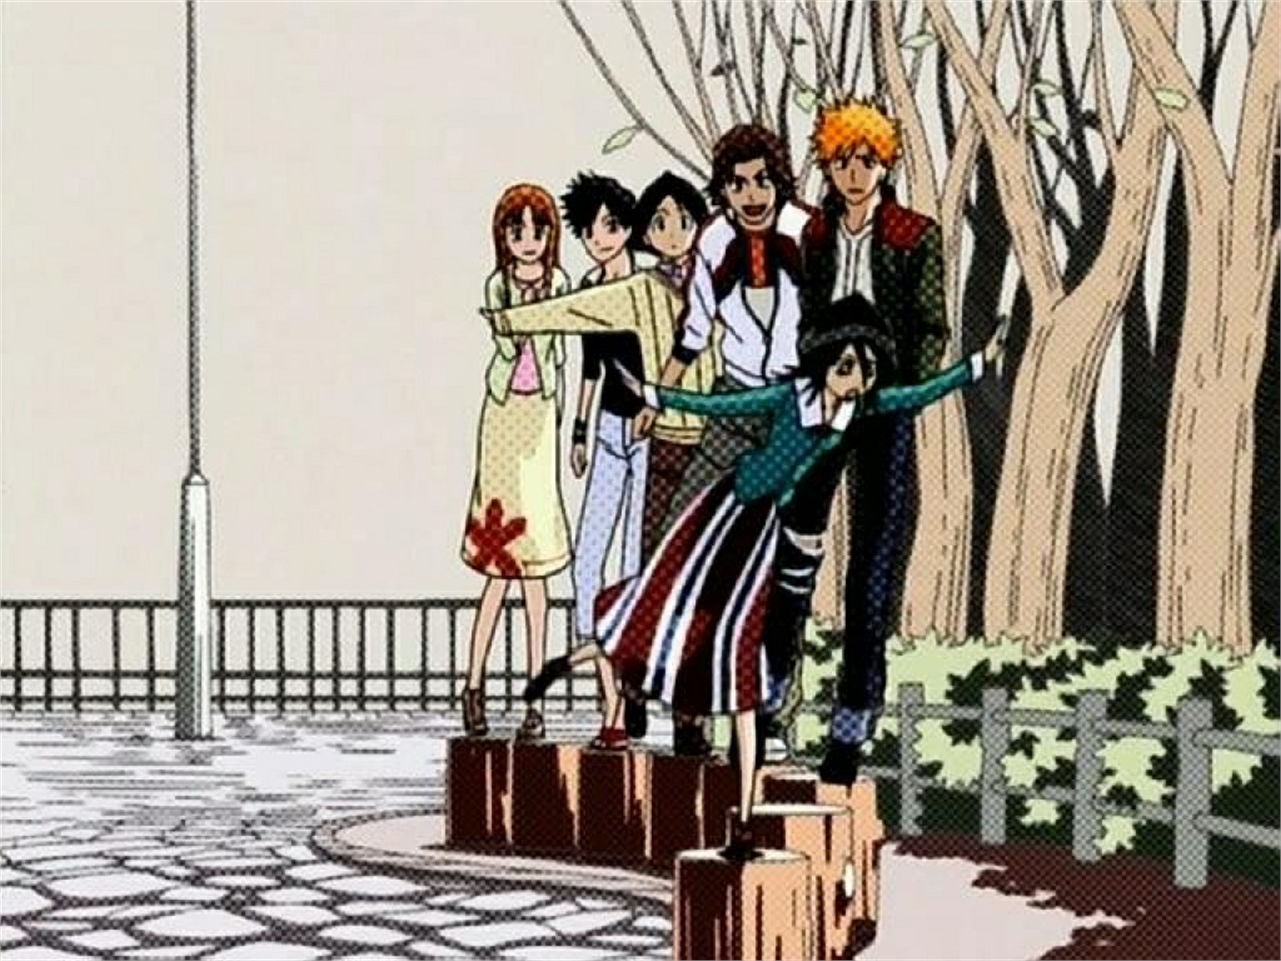 Free download wallpaper Anime, Bleach, Rukia Kuchiki, Ichigo Kurosaki, Orihime Inoue, Tatsuki Arisawa on your PC desktop